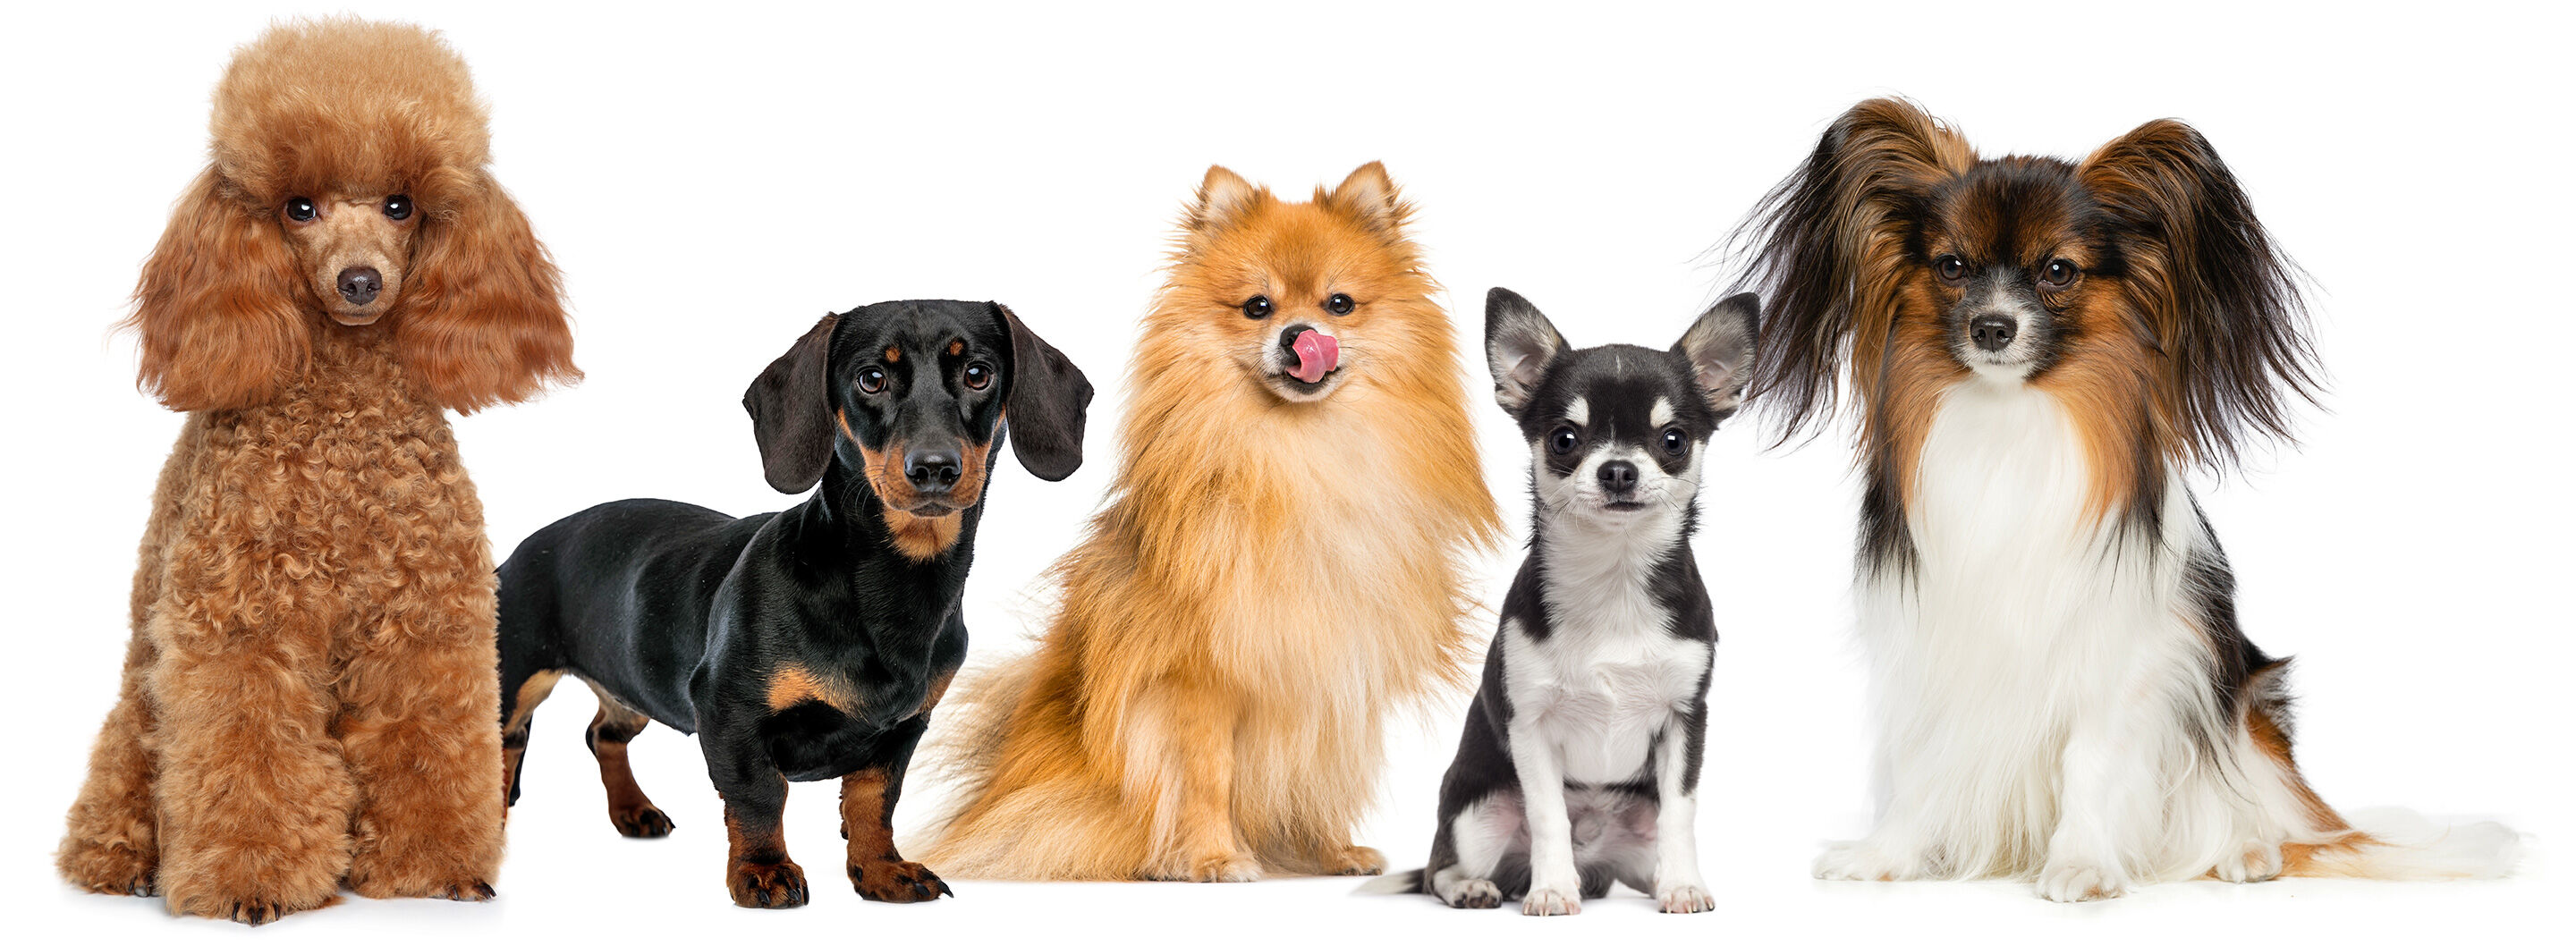 Fünf kleine Hunde nebeneinander in einer Reihe: Pudel, Dackel, Zwergspitz, Chihuahua und Pomeranian